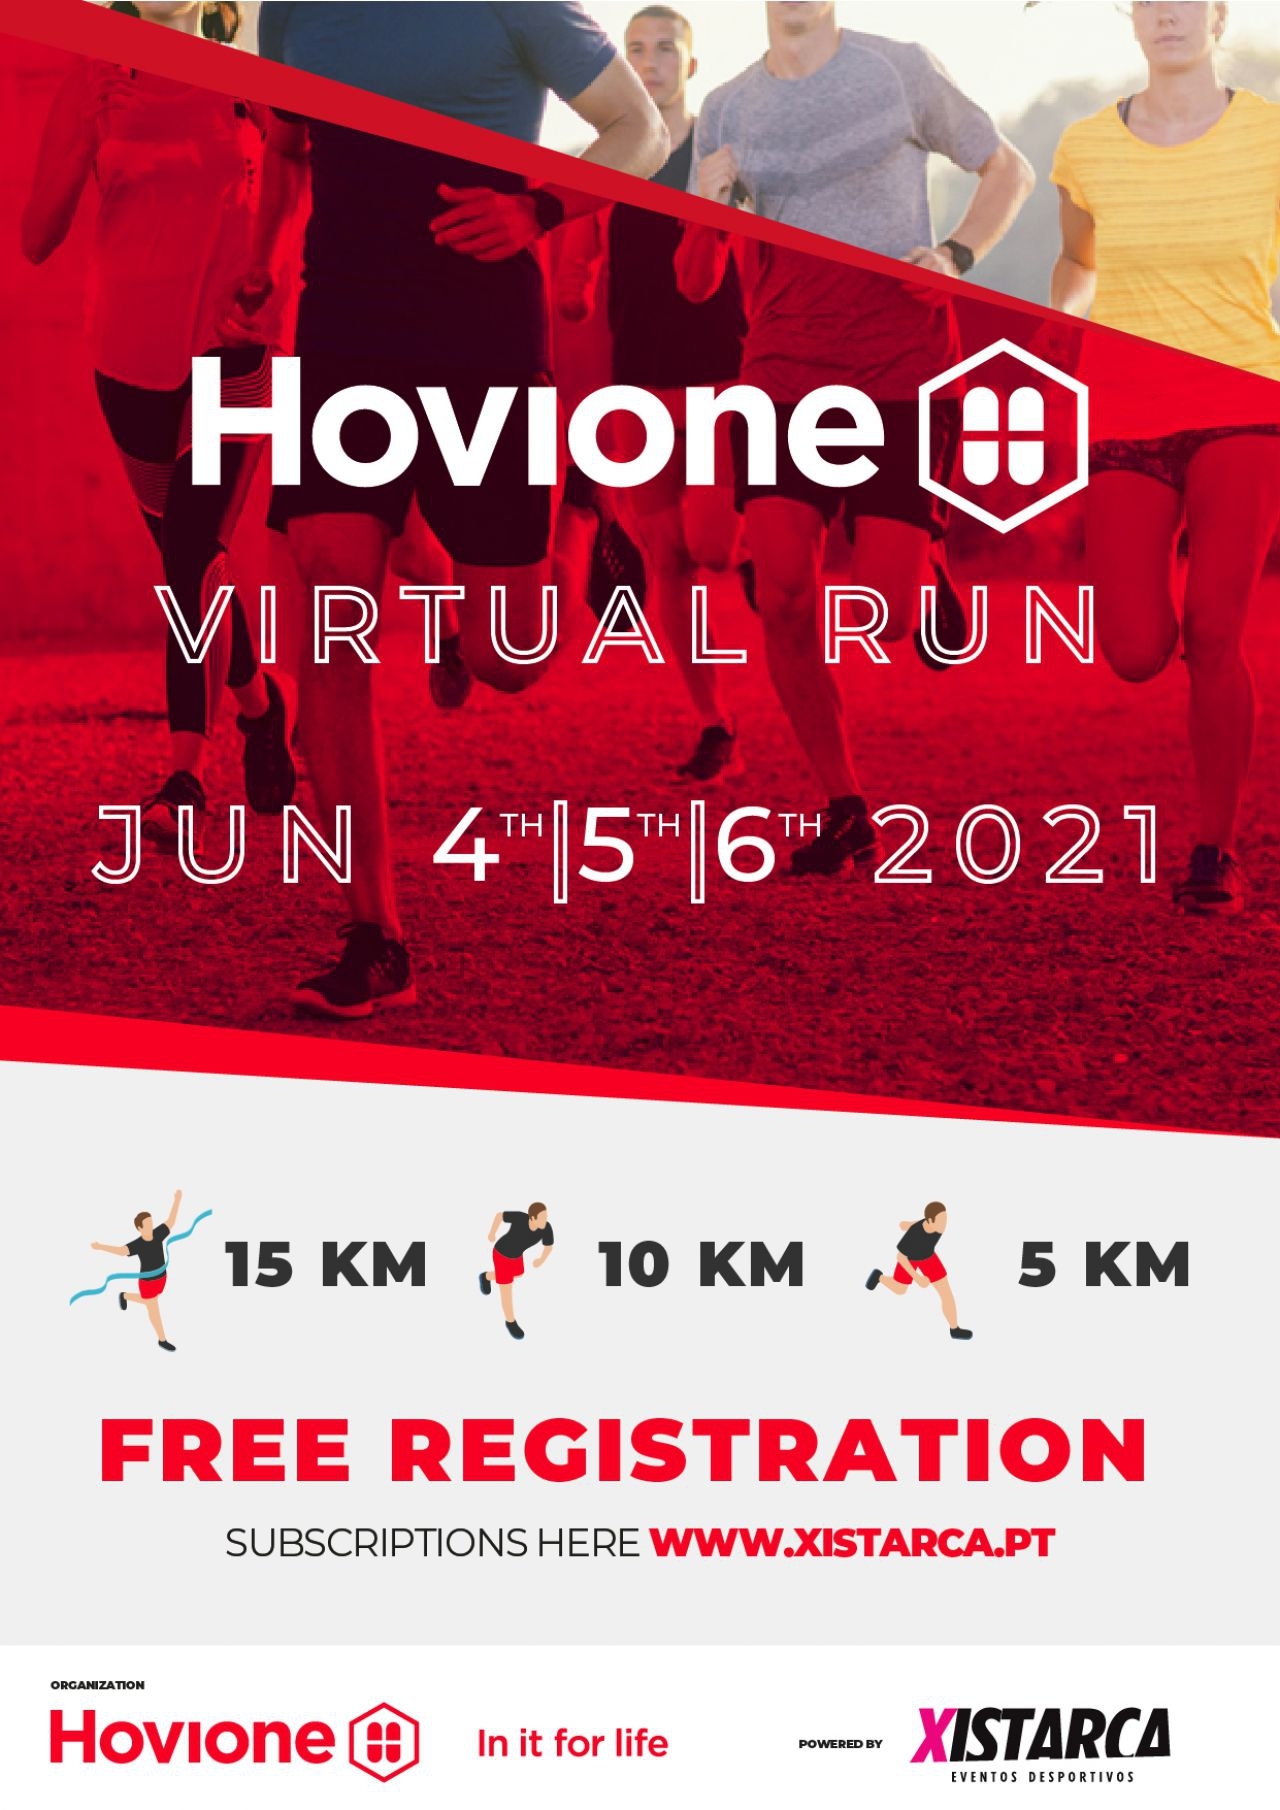 Virtual Run | Hovione